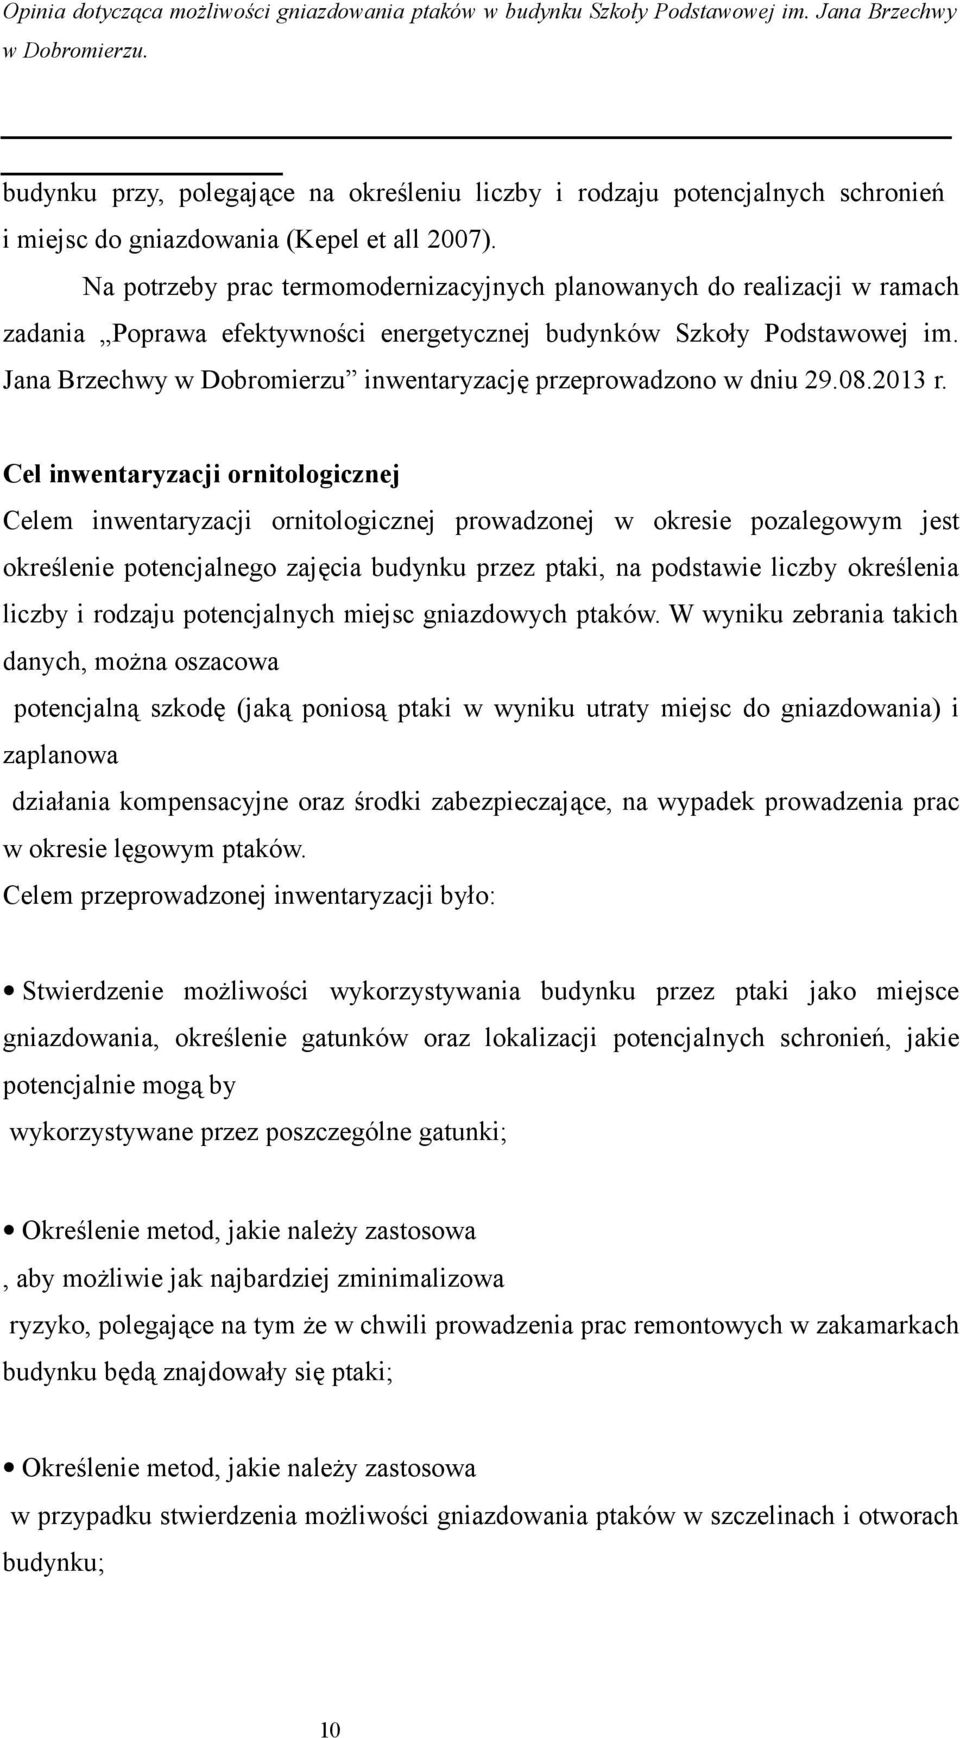 Jana Brzechwy w Dobromierzu inwentaryzację przeprowadzono w dniu 29.08.2013 r.